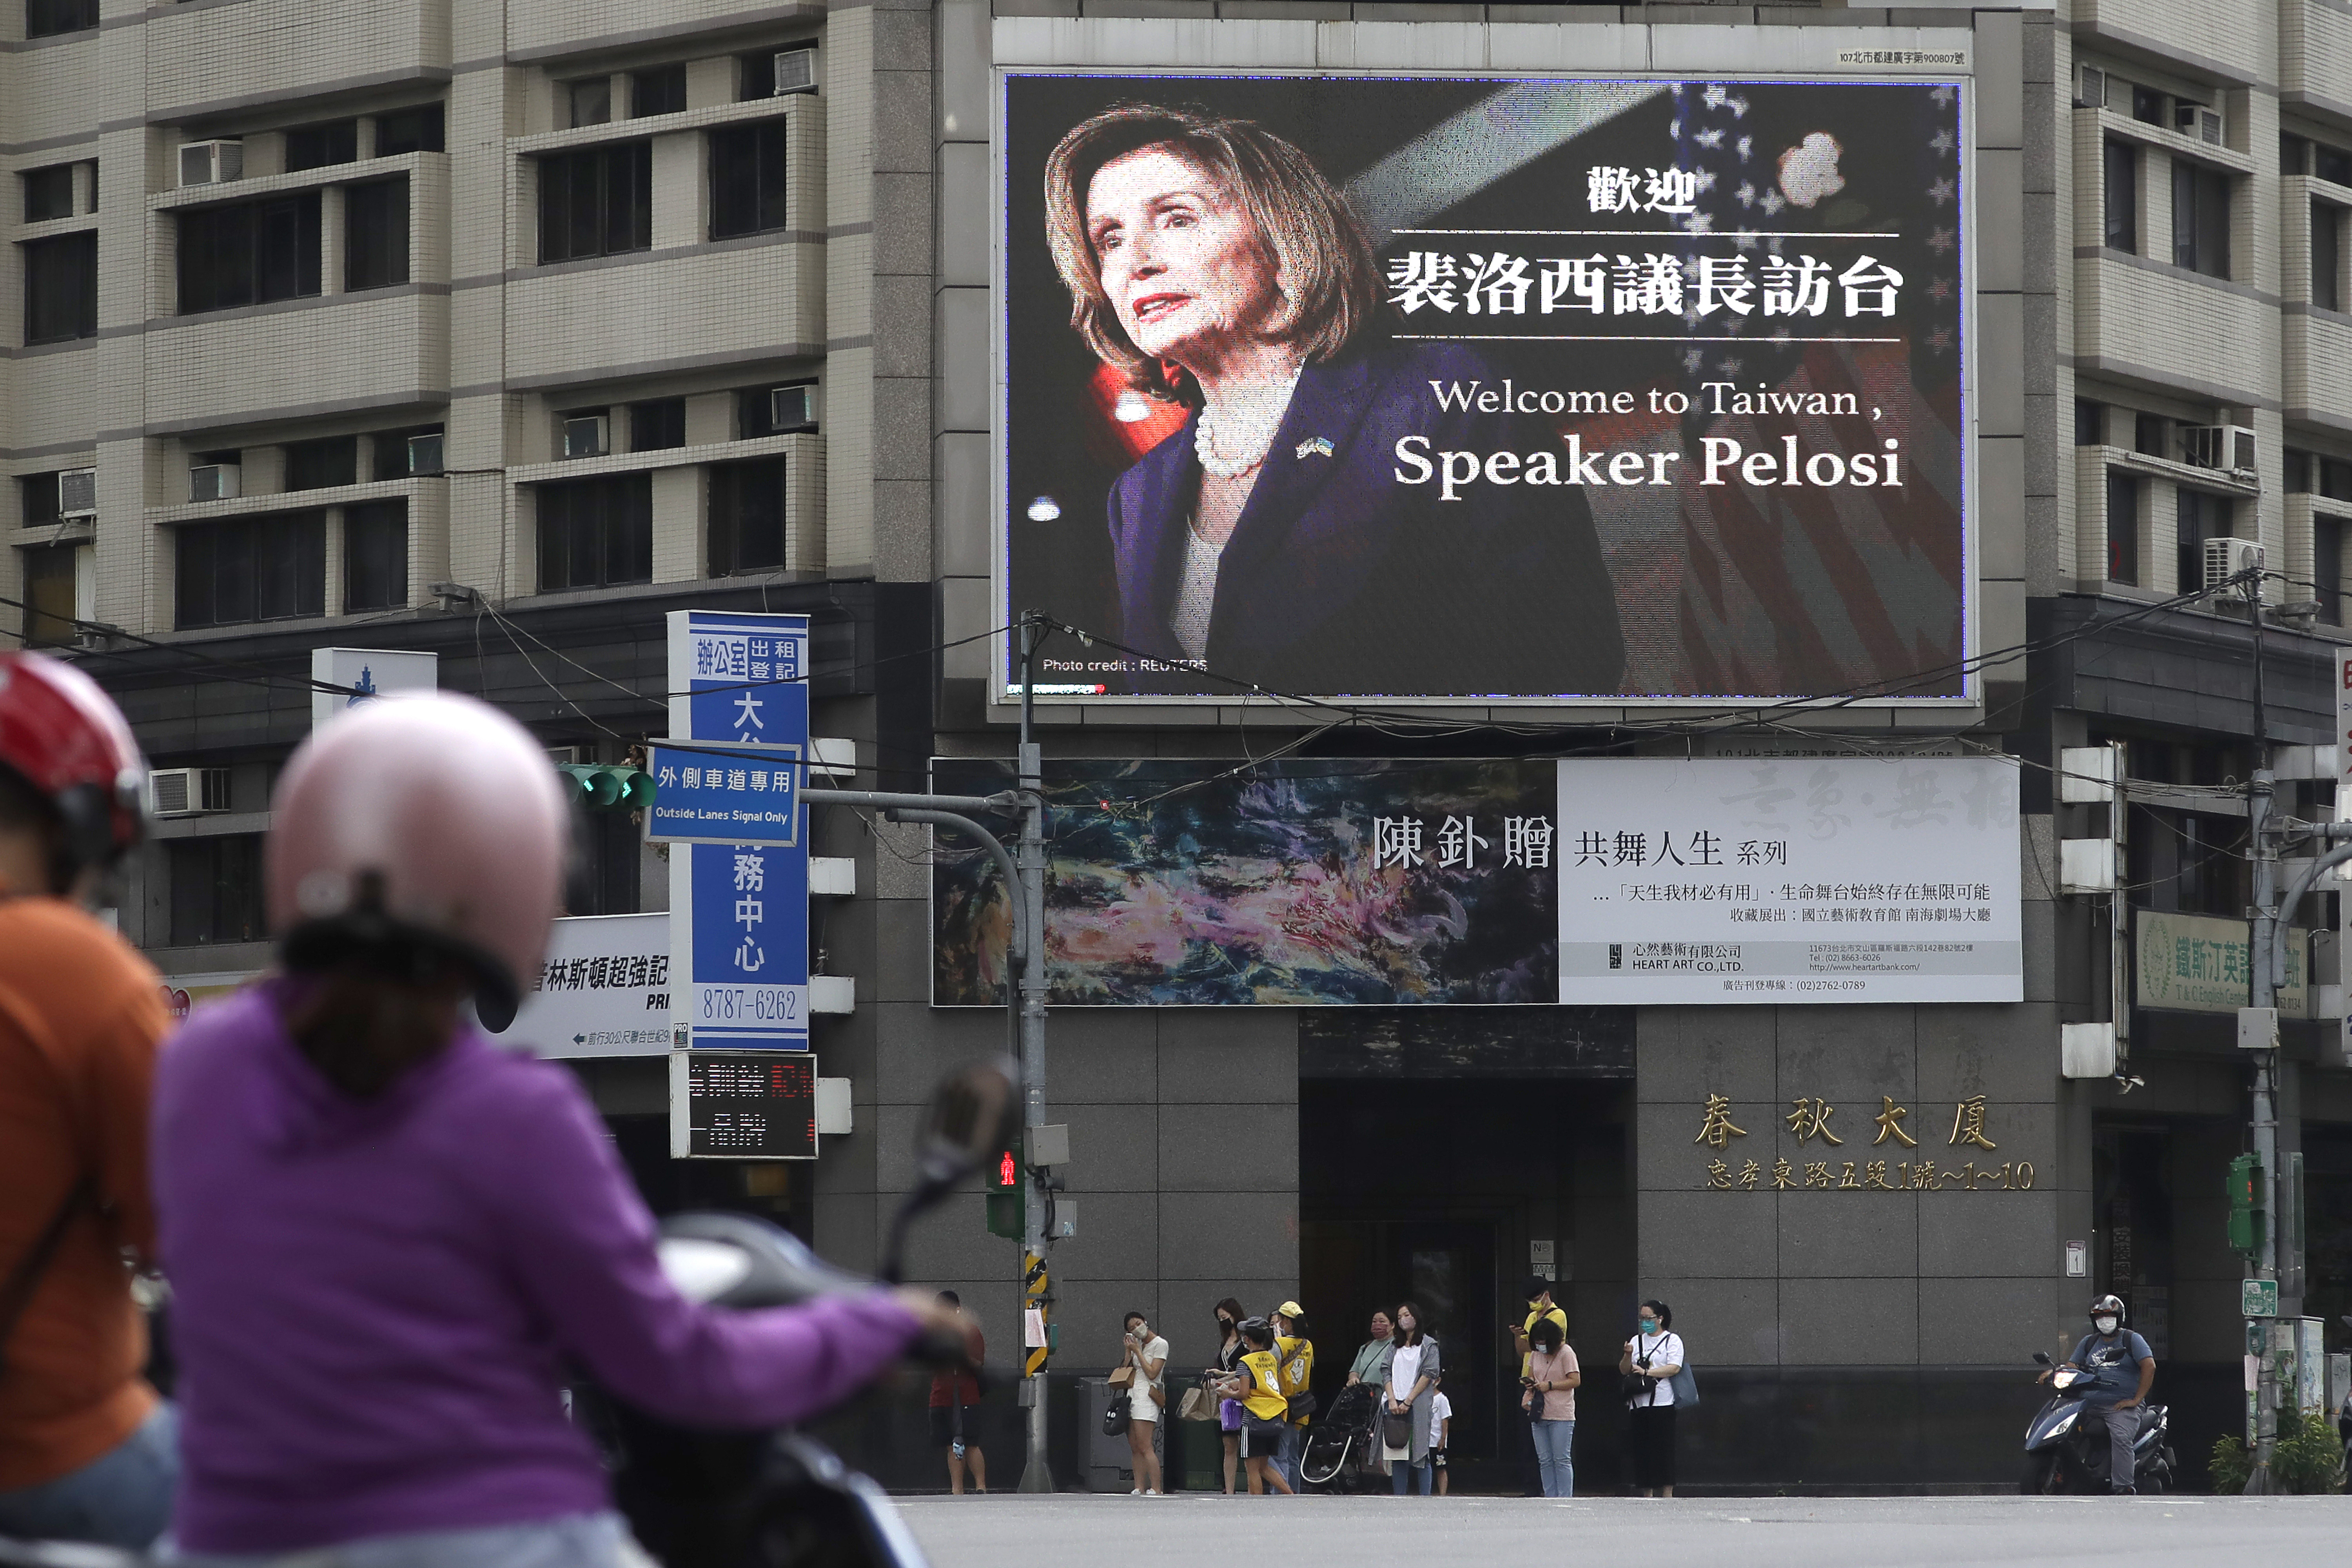 La gente pasa frente a un cartel que da la bienvenida a la presidenta de la Cámara de Representantes de Estados Unidos, Nancy Pelosi, en Taipei. (Foto AP/Chiang Ying-ying)